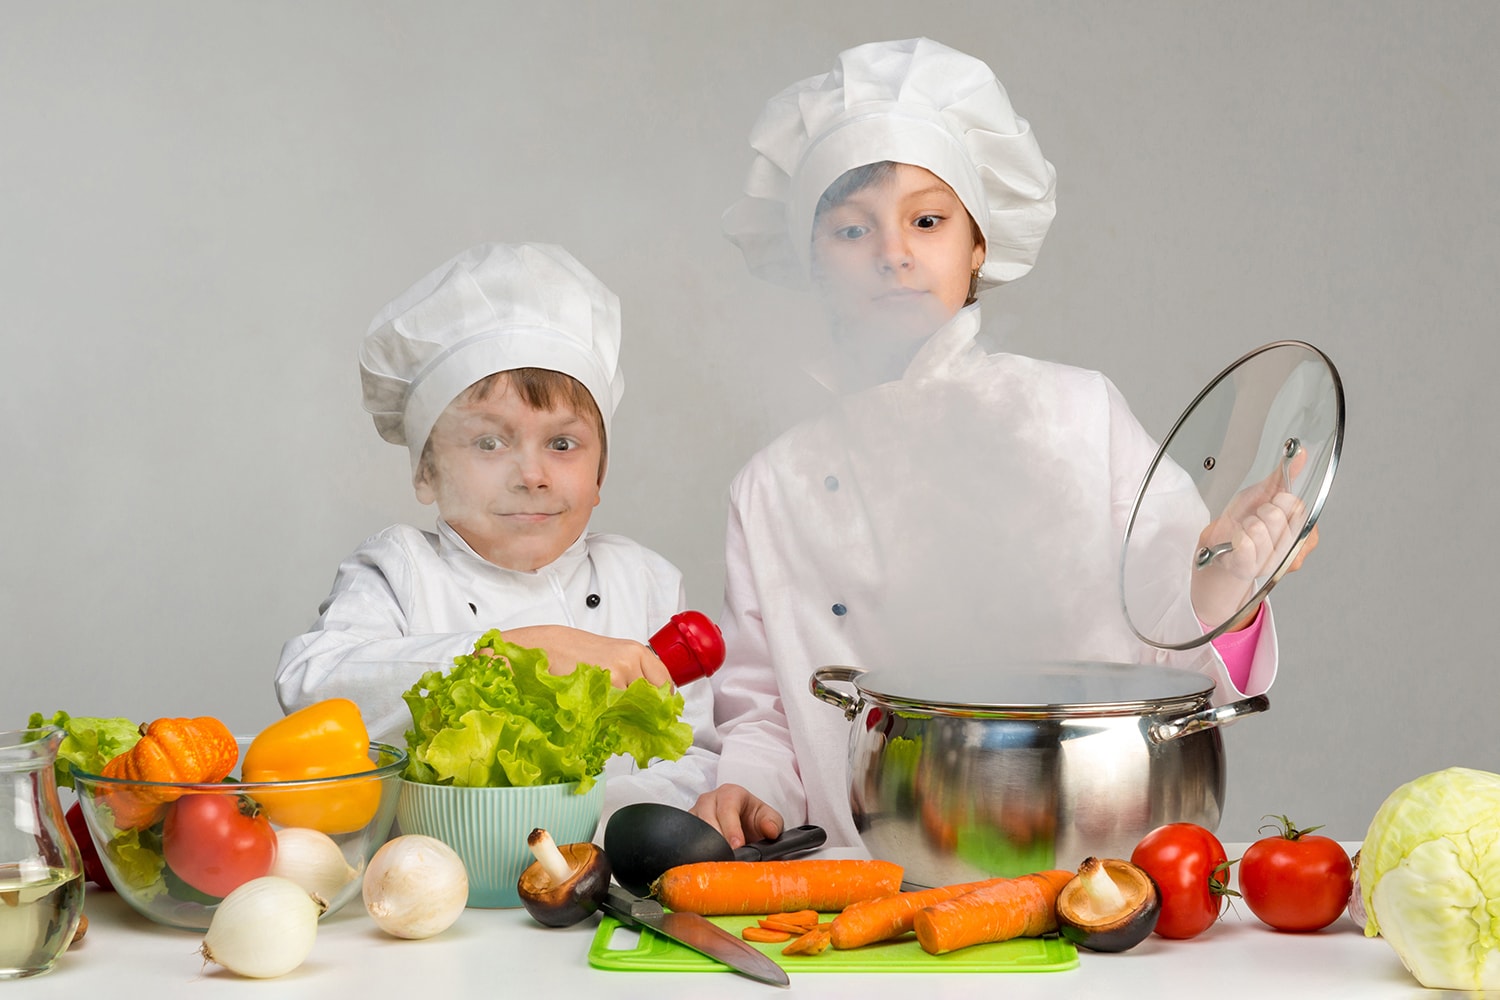 Zwei Kinder in Kochkleidung öffnen ein Topf